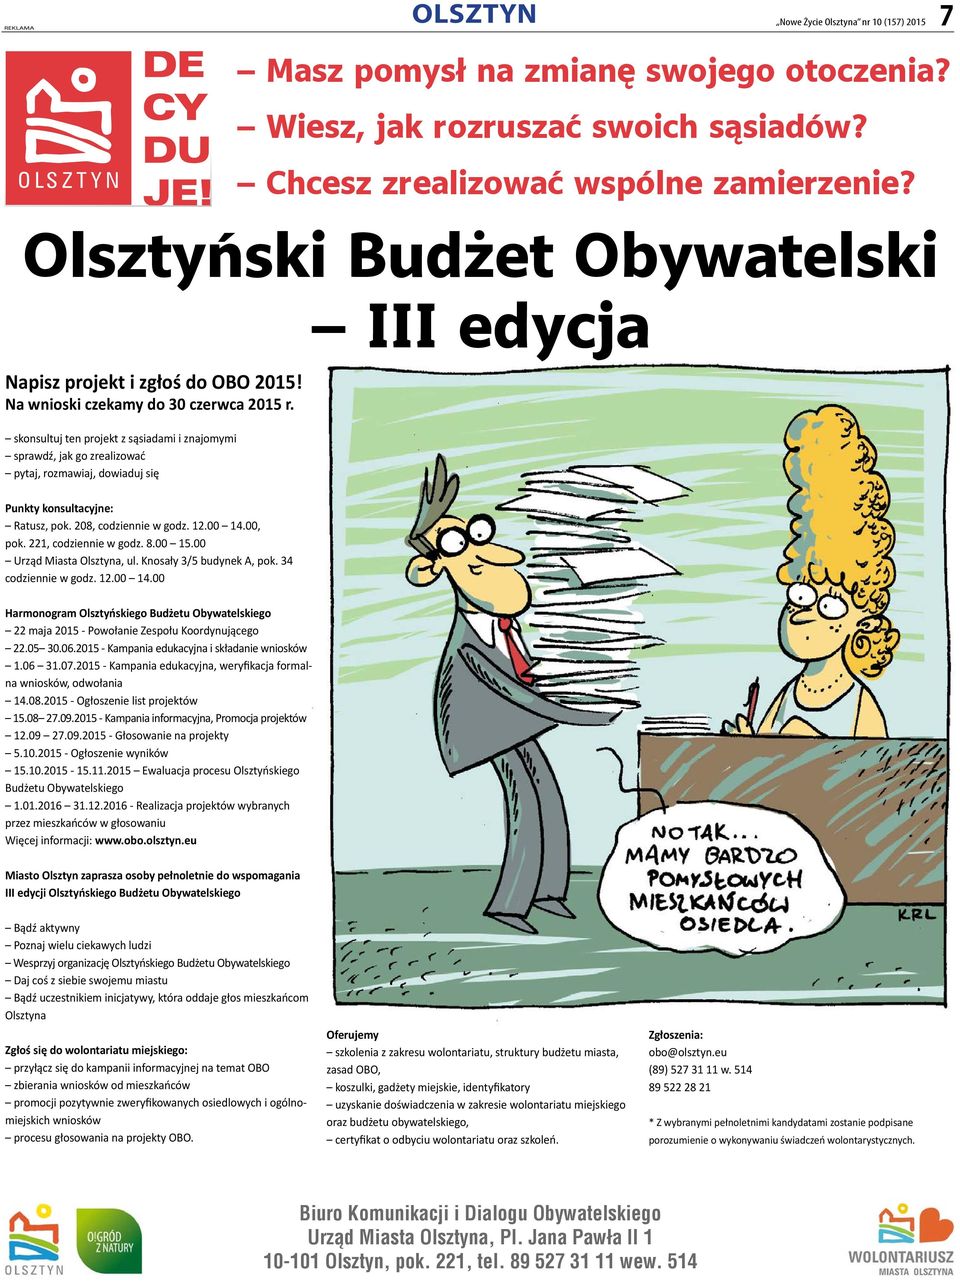 Chcesz zrealizować wspólne zamierzenie? Olsztyński Budżet Obywatelski III edycja Punkty konsultacyjne: Ratusz, pok. 208, codziennie w godz. 12.00 14.00, pok. 221, codziennie w godz. 8.00 15.